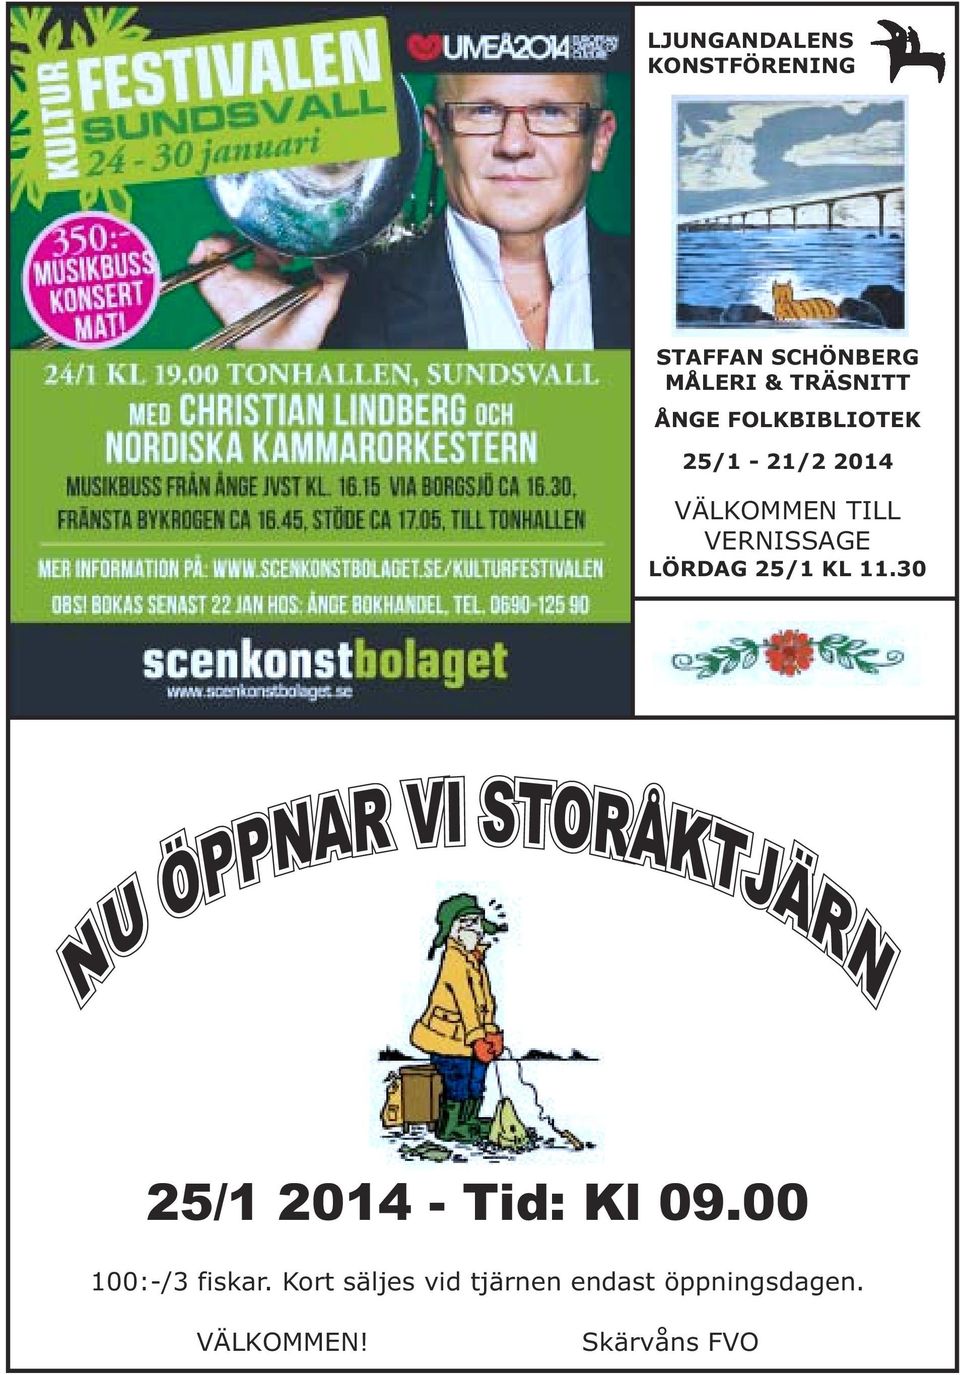 11.30 NU ÖPPNAR VI STORÅKTJÄRN 25/1 2014 - Tid: Kl 09.